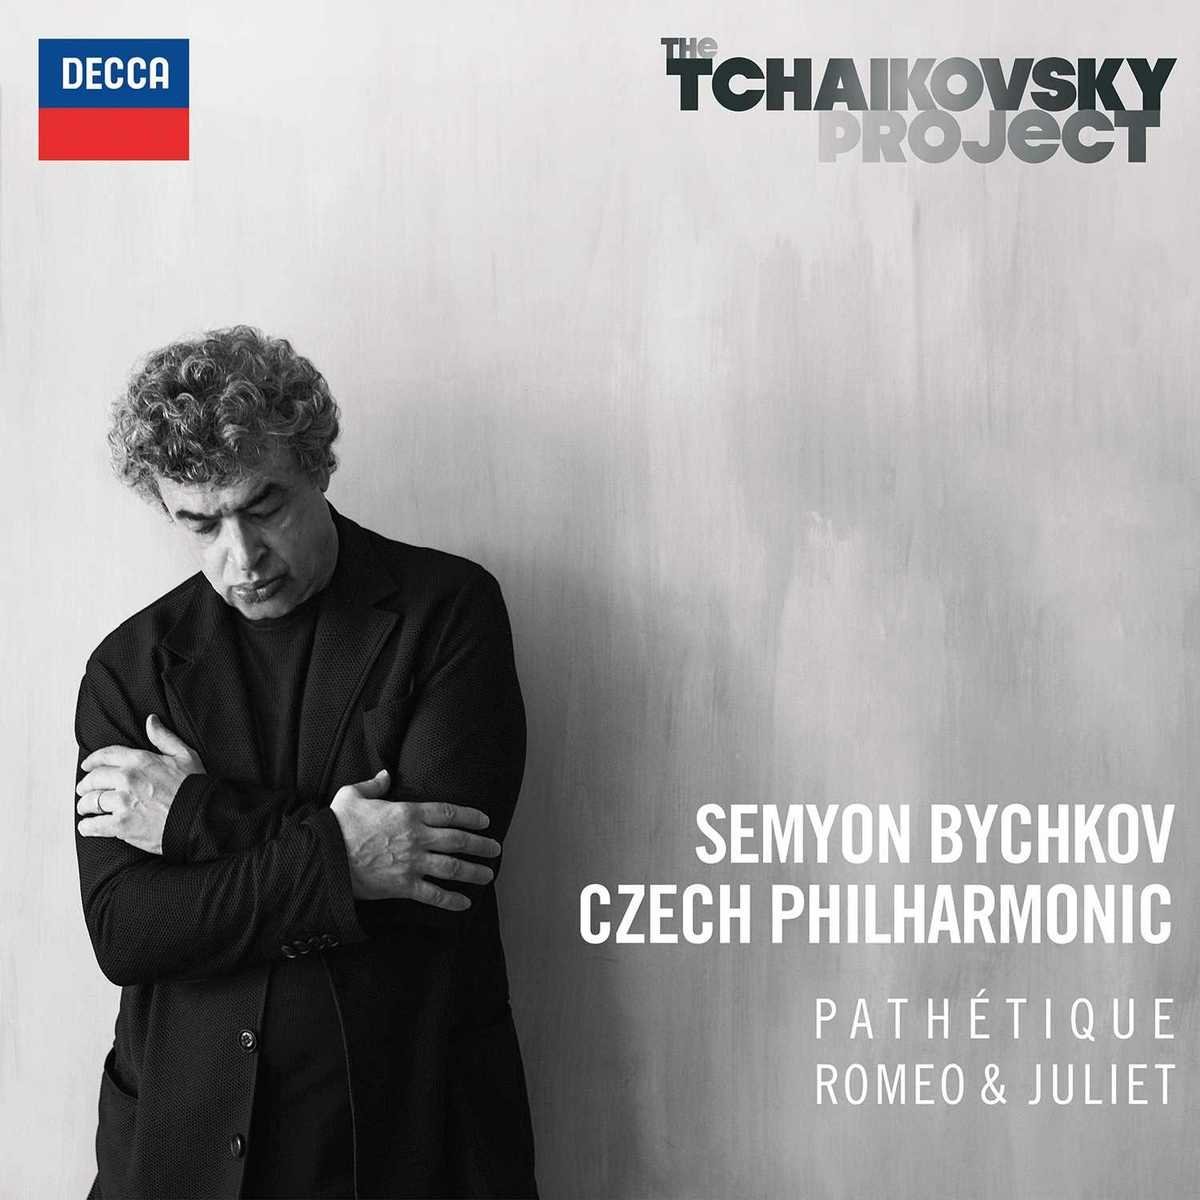 Semyon Bychkov & Czech Philharmonic Orchestra - The Tchaikovsky Project, Vol. 1: Pathetique, Romeo & Juliet (2016) [FLAC 24bit/96kHz]